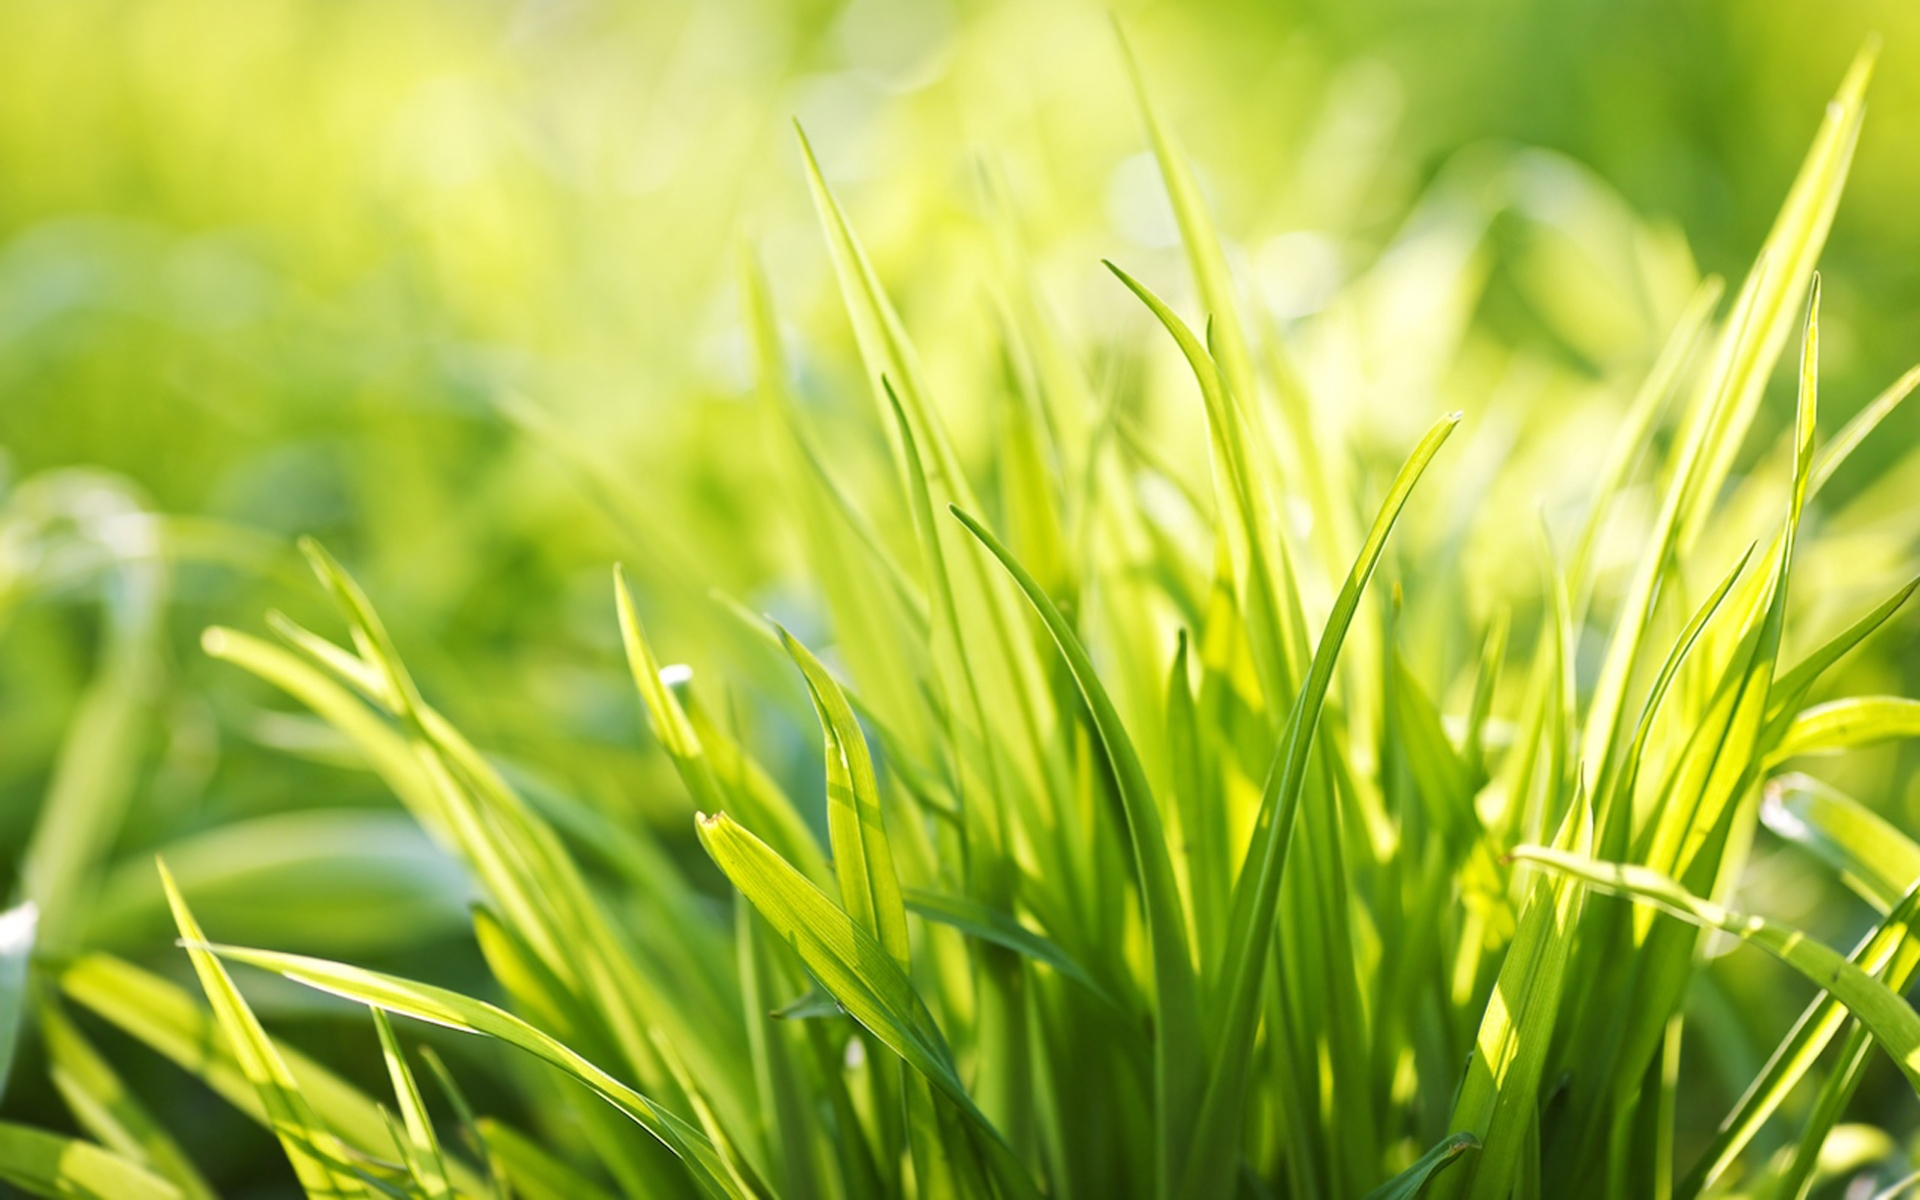 Ever Green Grass for 1920 x 1200 widescreen resolution